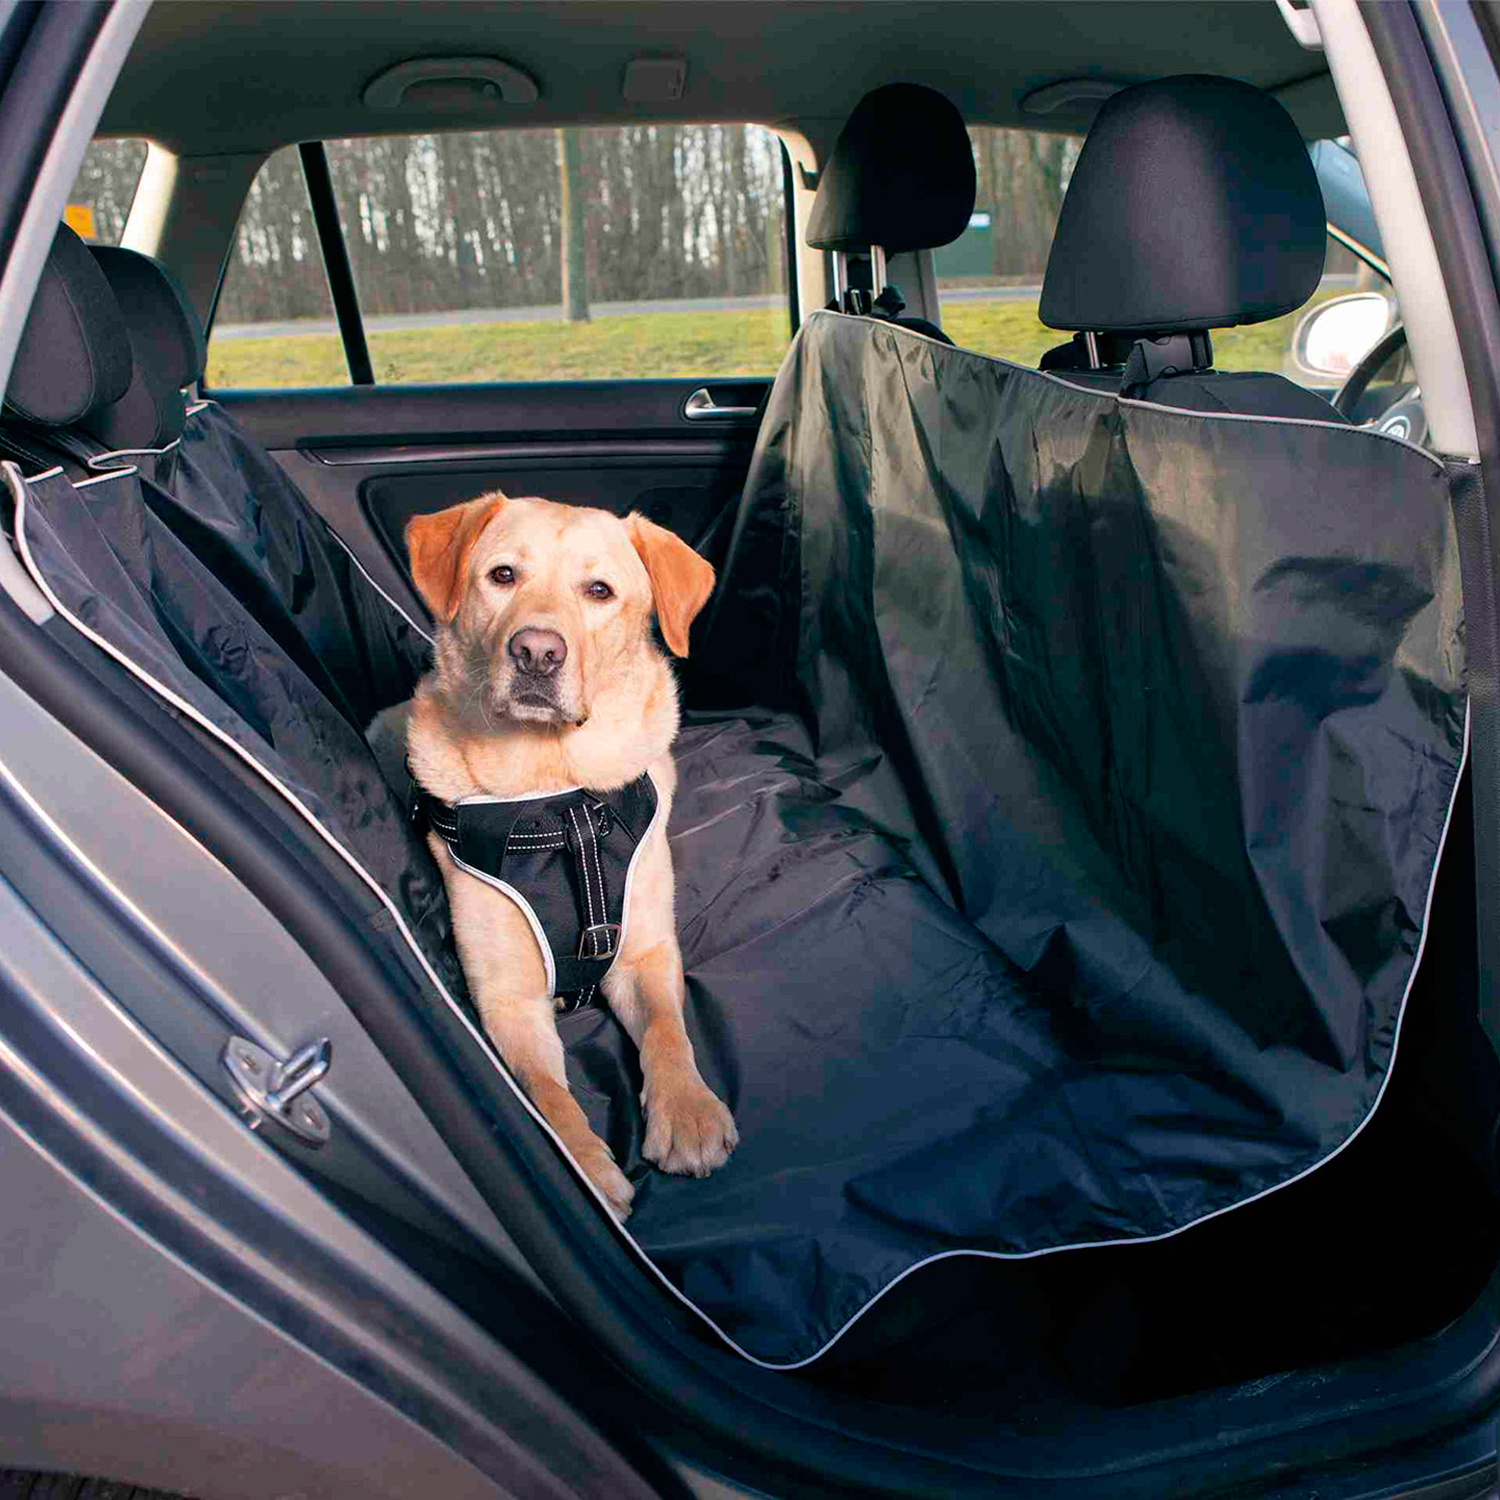 La mejor funda protectora para viajar en coche con tu mascota está